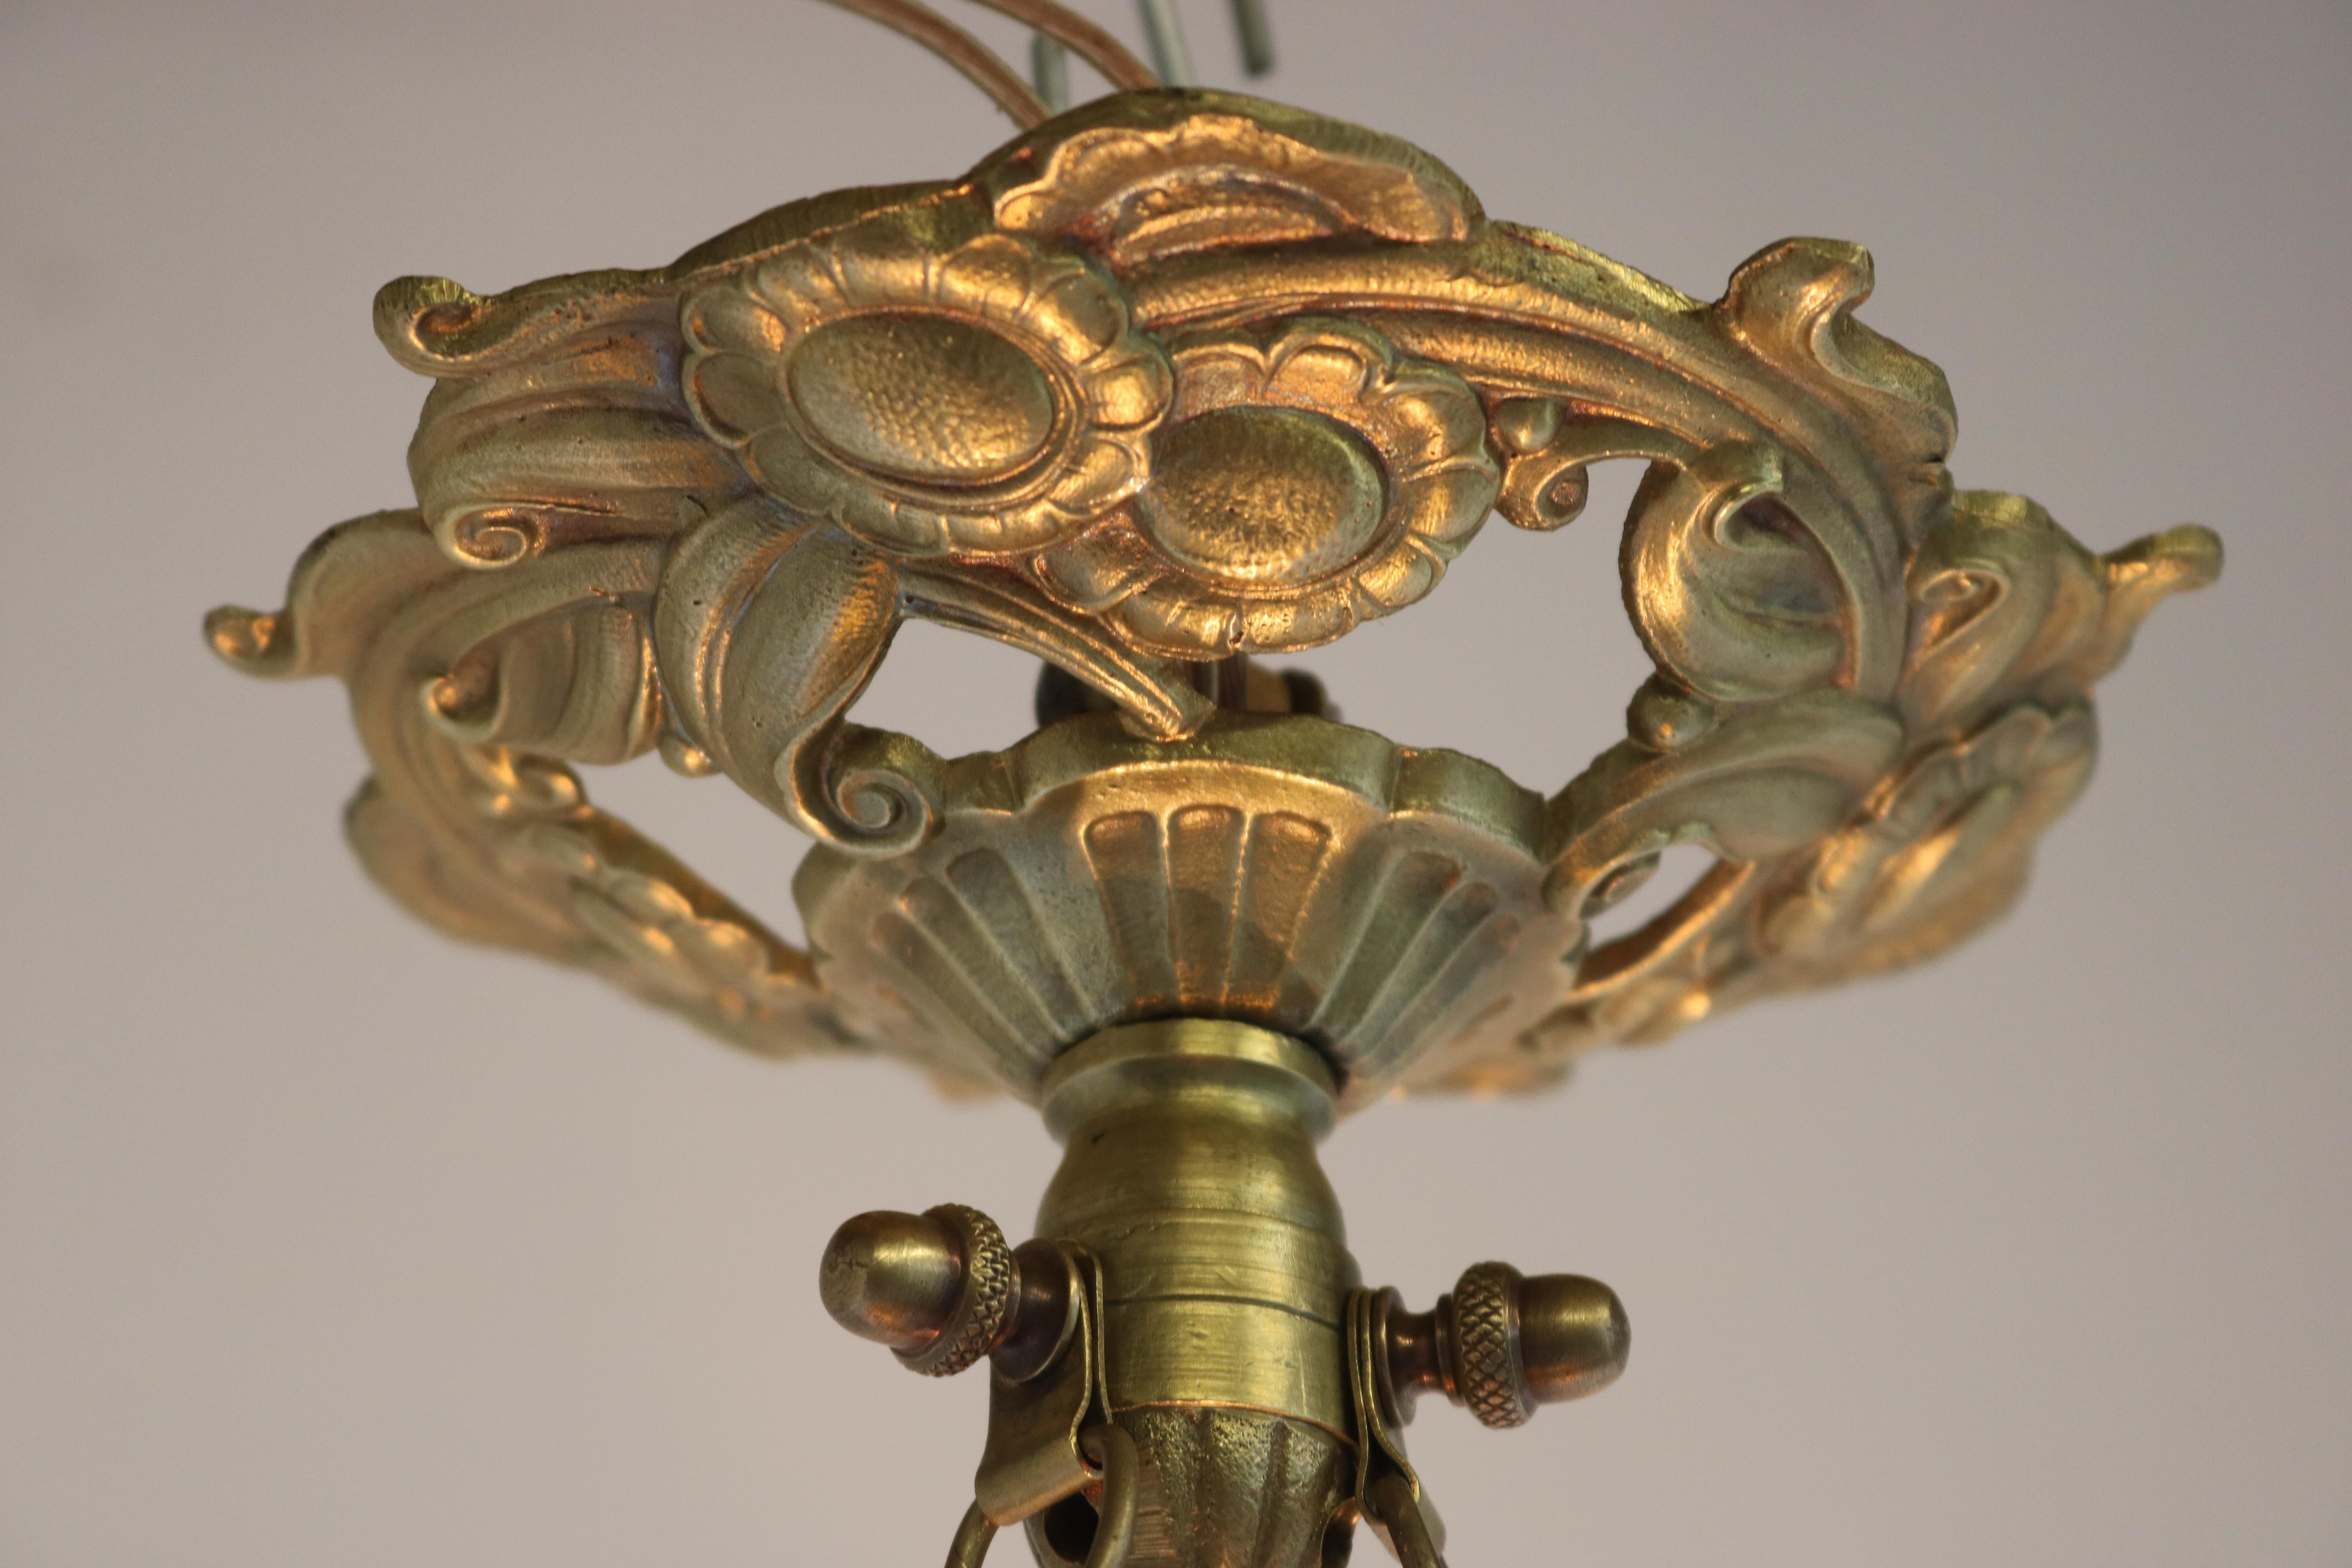 Gorgeous pate de verre degue chandelier antique French art nouveau bronze  In Good Condition For Sale In Ijzendijke, NL